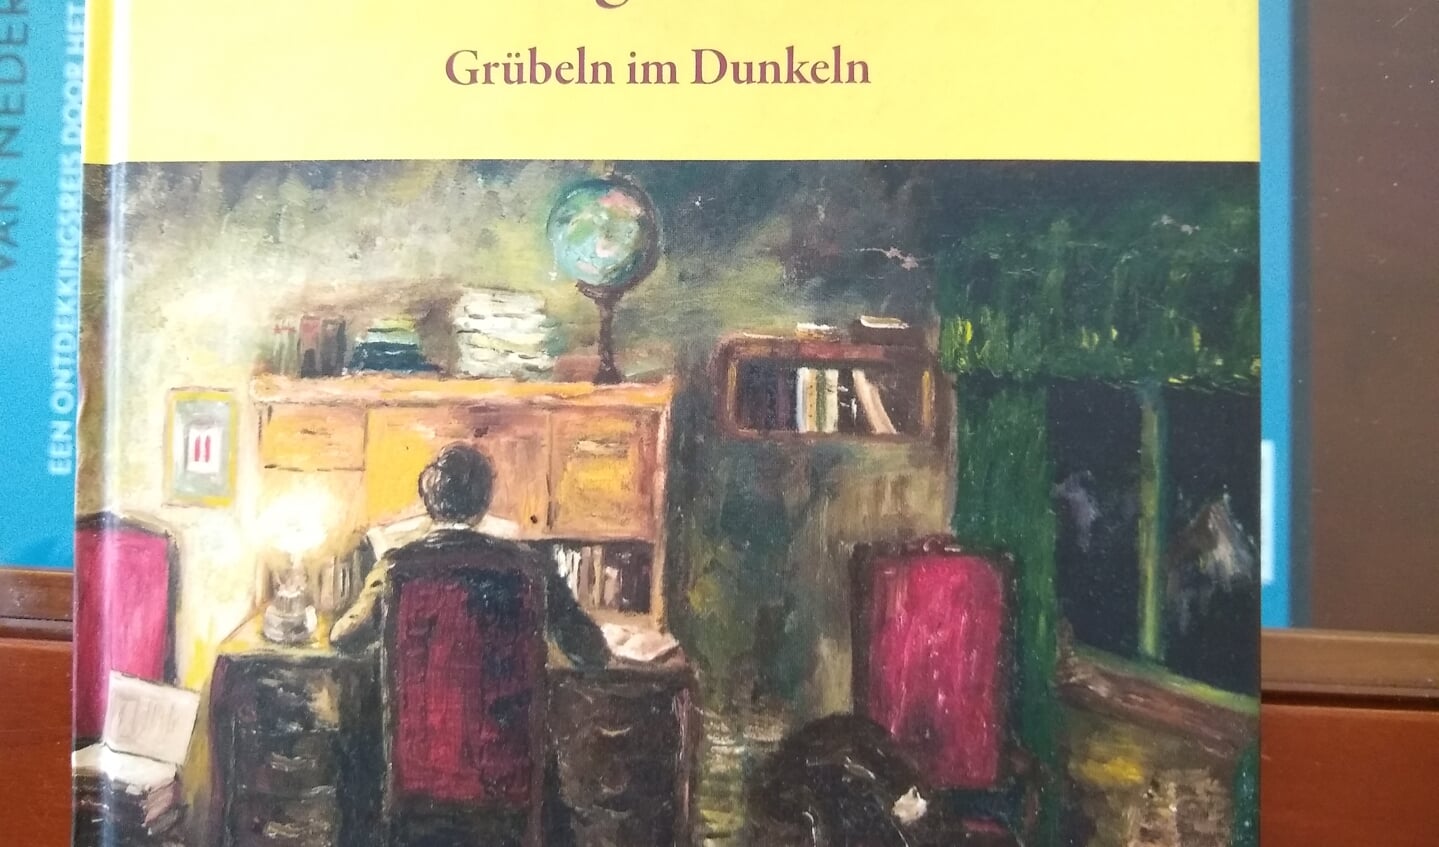 Het boek met teksten en werken van Heinz Geiringer.